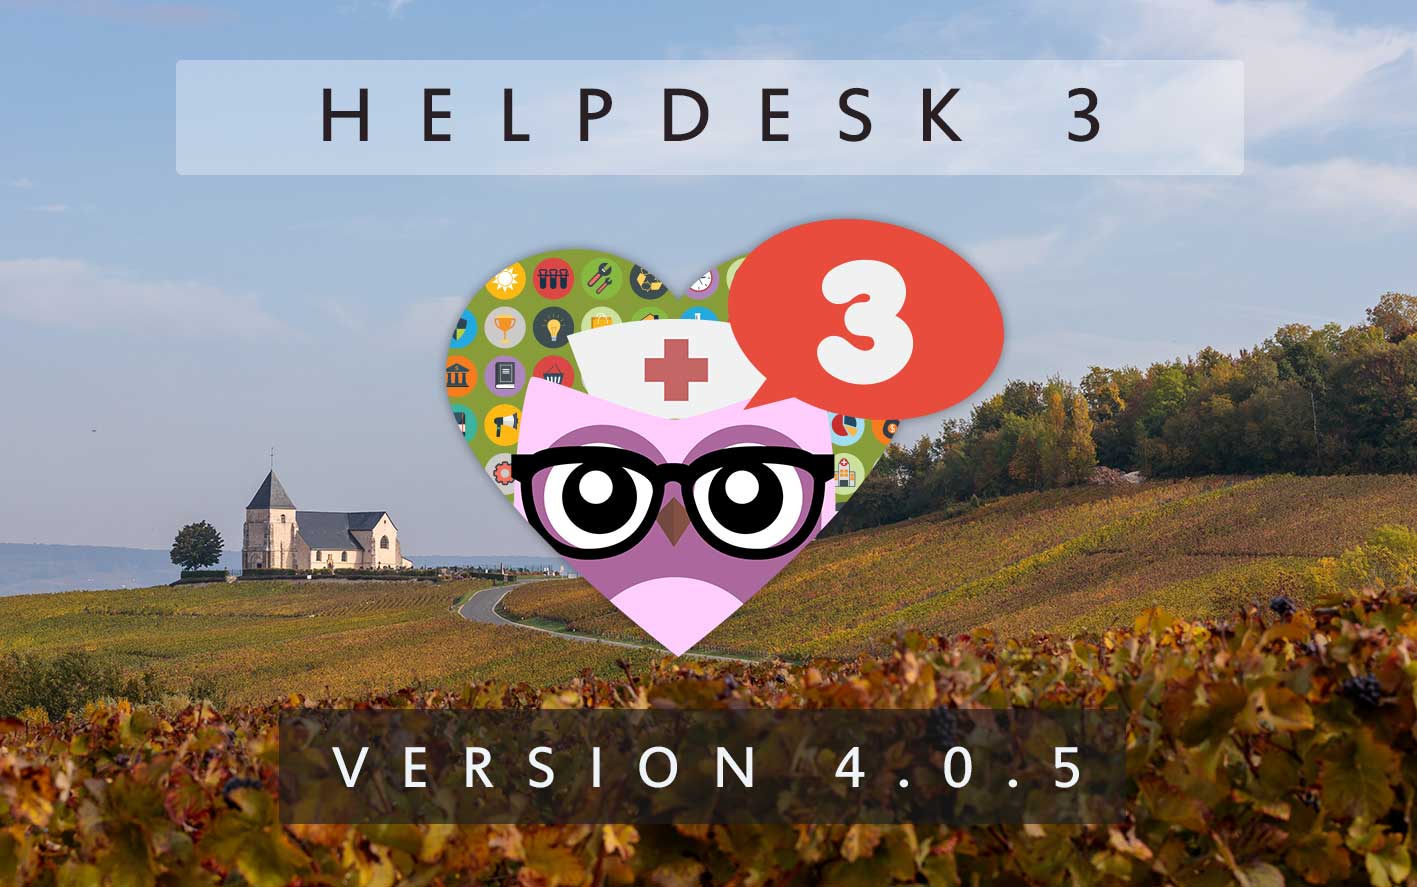 HelpDesk 3 - Version 4.0.5